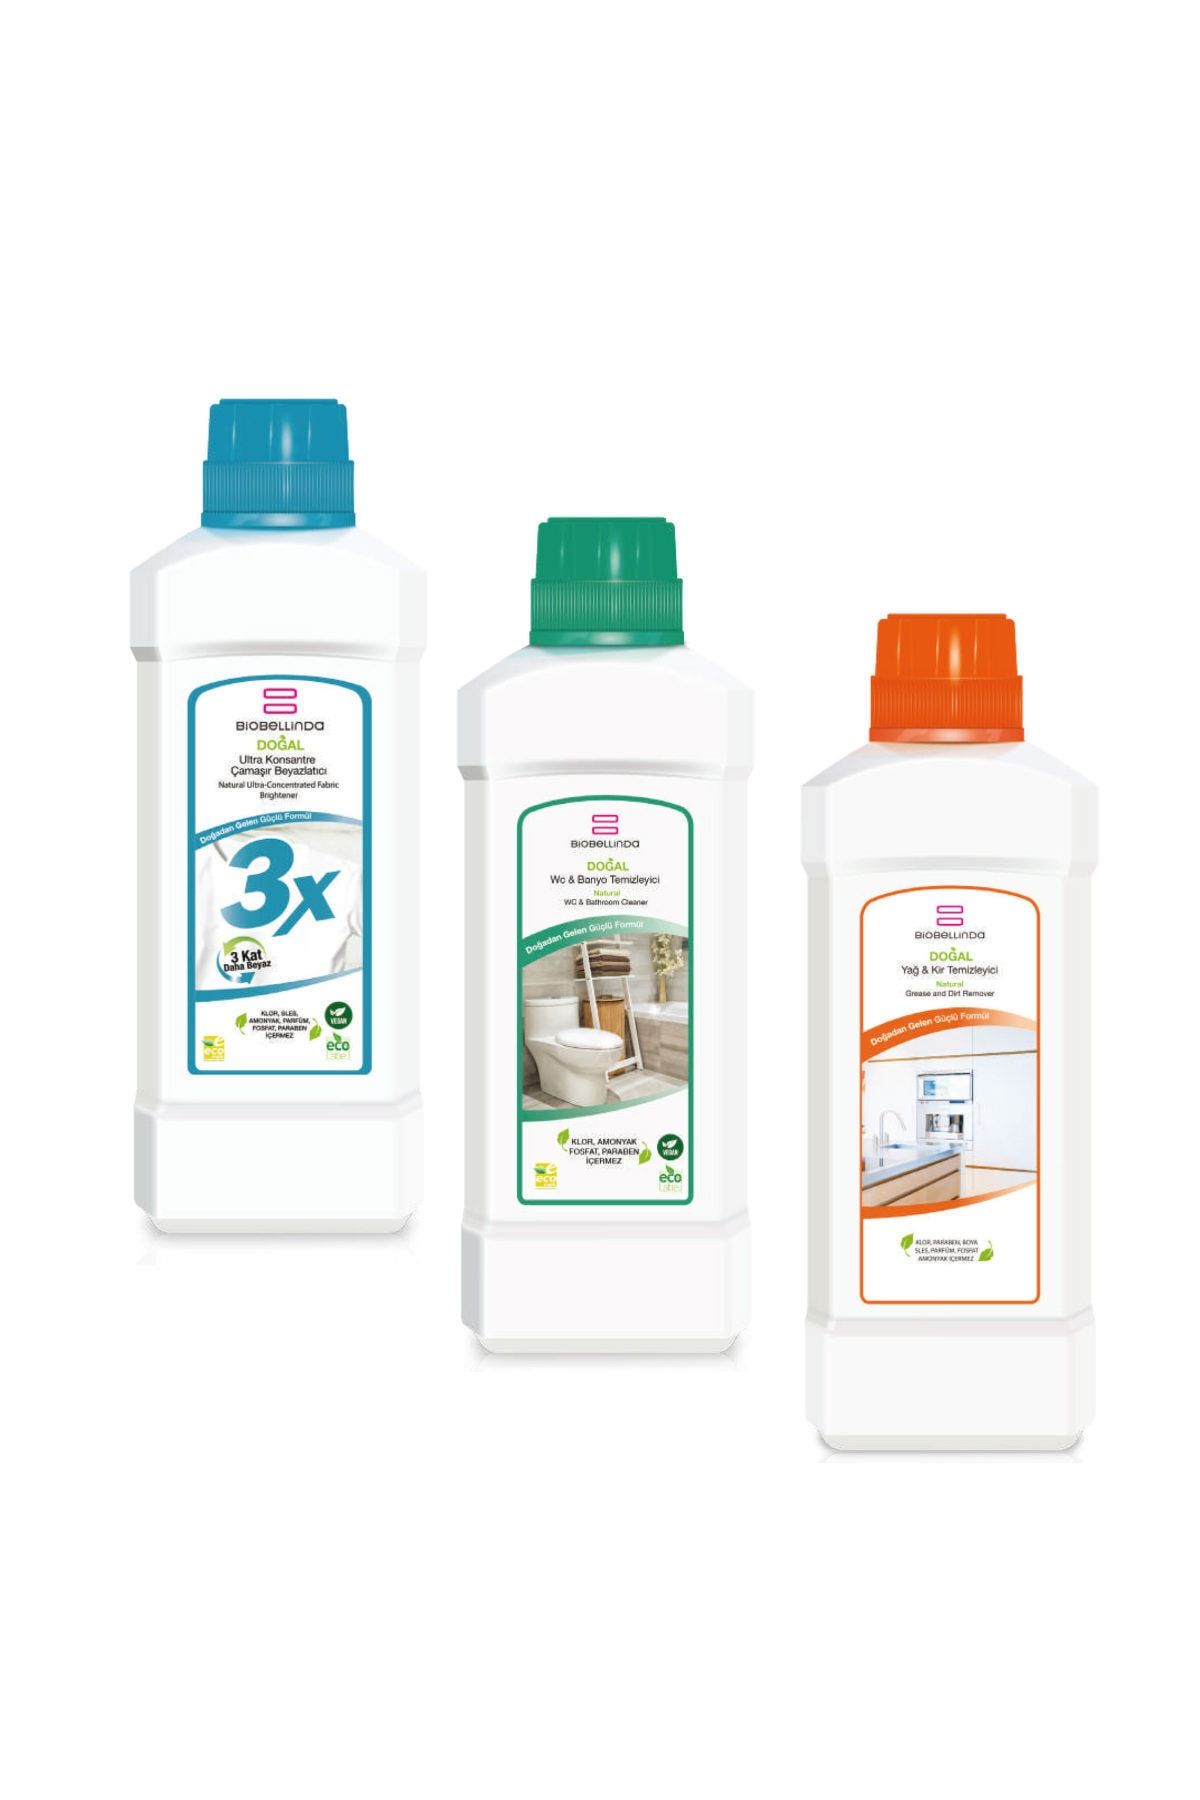 BioBellinda 3x Çamaşır Beyazlatıcı Wc & Banyo Temizleyici + Yağ & Kir Temizleyici